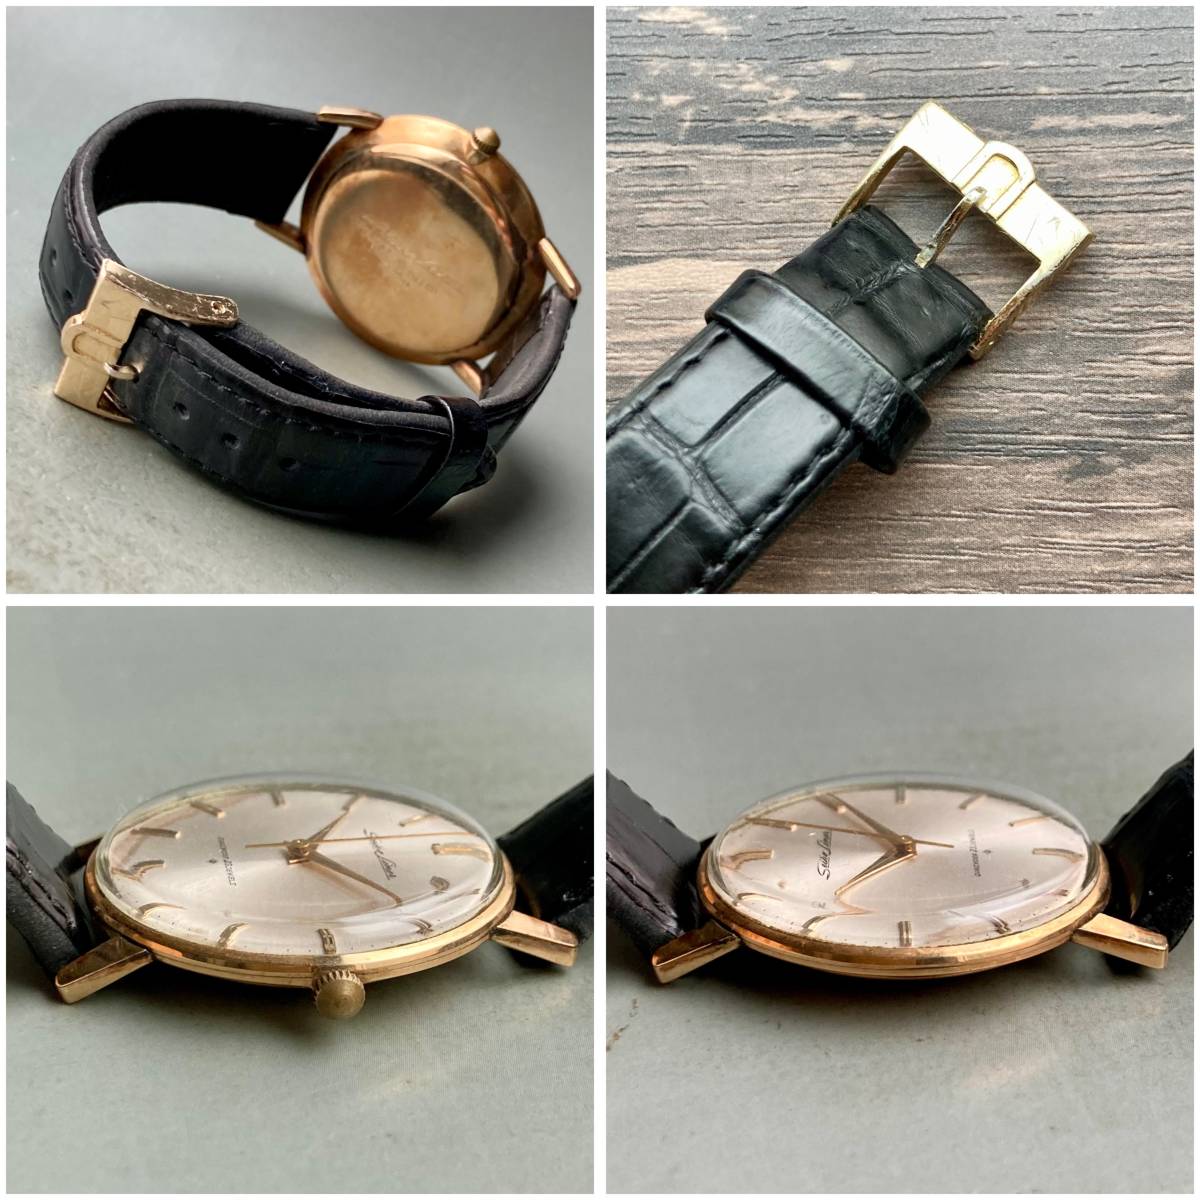 【動作品】セイコー ライナー アンティーク 腕時計 1962年 手巻き メンズ SEIKO Liner ケース径36㎜ ビンテージ ウォッチ 男性  レトロ